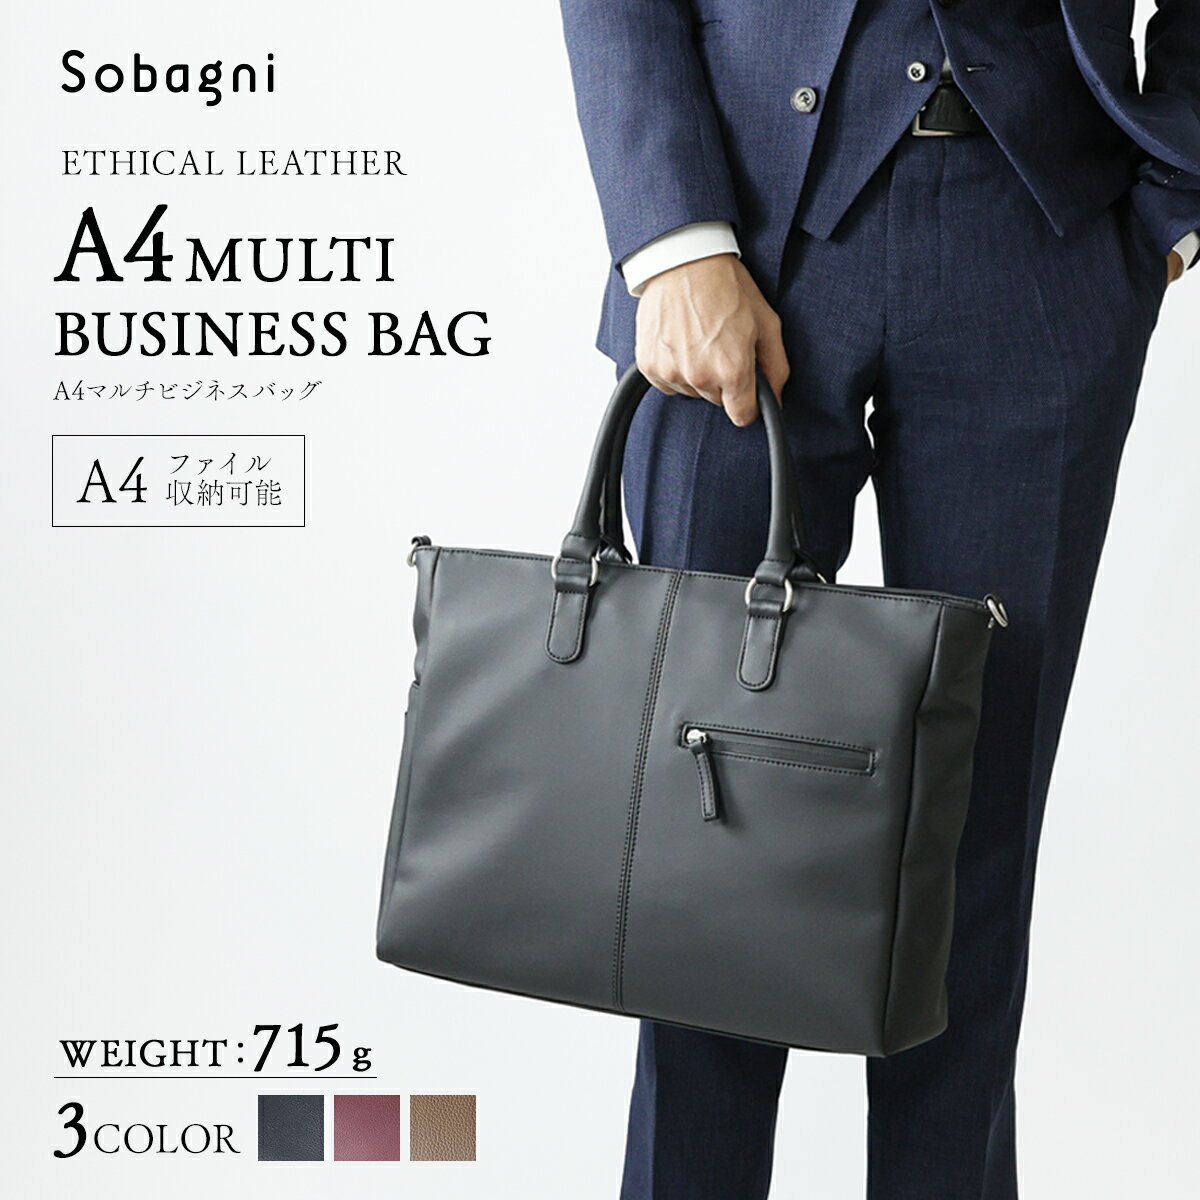 新款 Sobagni 皮質 A4 公事包 輕量 兩用 手提包 肩背包 側背包 上班族 通勤包 男包 女包 日本製皮革 禮物